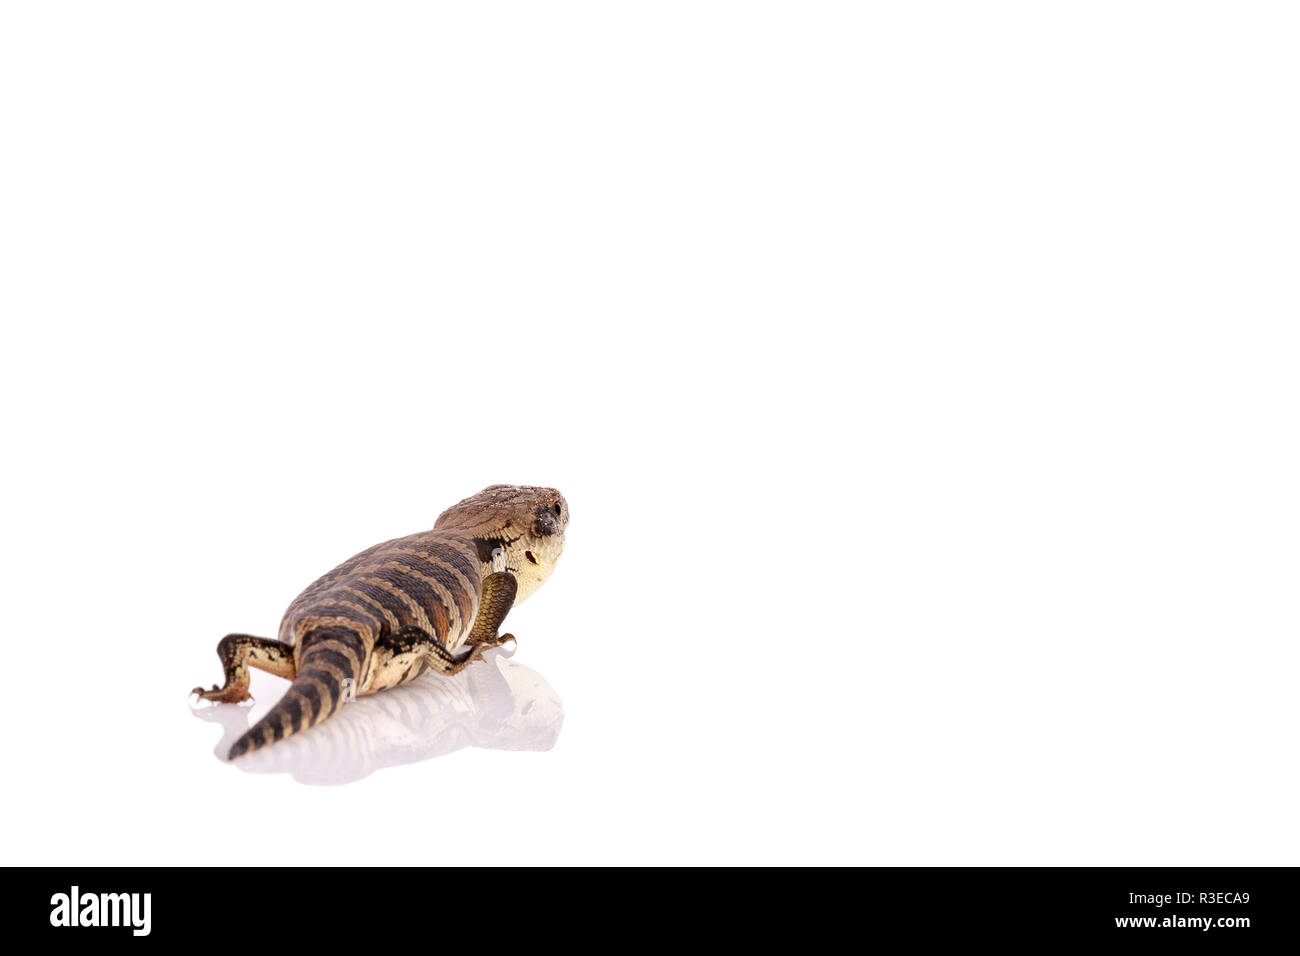 Australische Jugendliche Eastern Blue Tongue Lizard selektiven Fokus und Nahaufnahme mit Reflexion auf reflektierende weiße Plexiglas Sockel isoliert zu Fuß Stockfoto